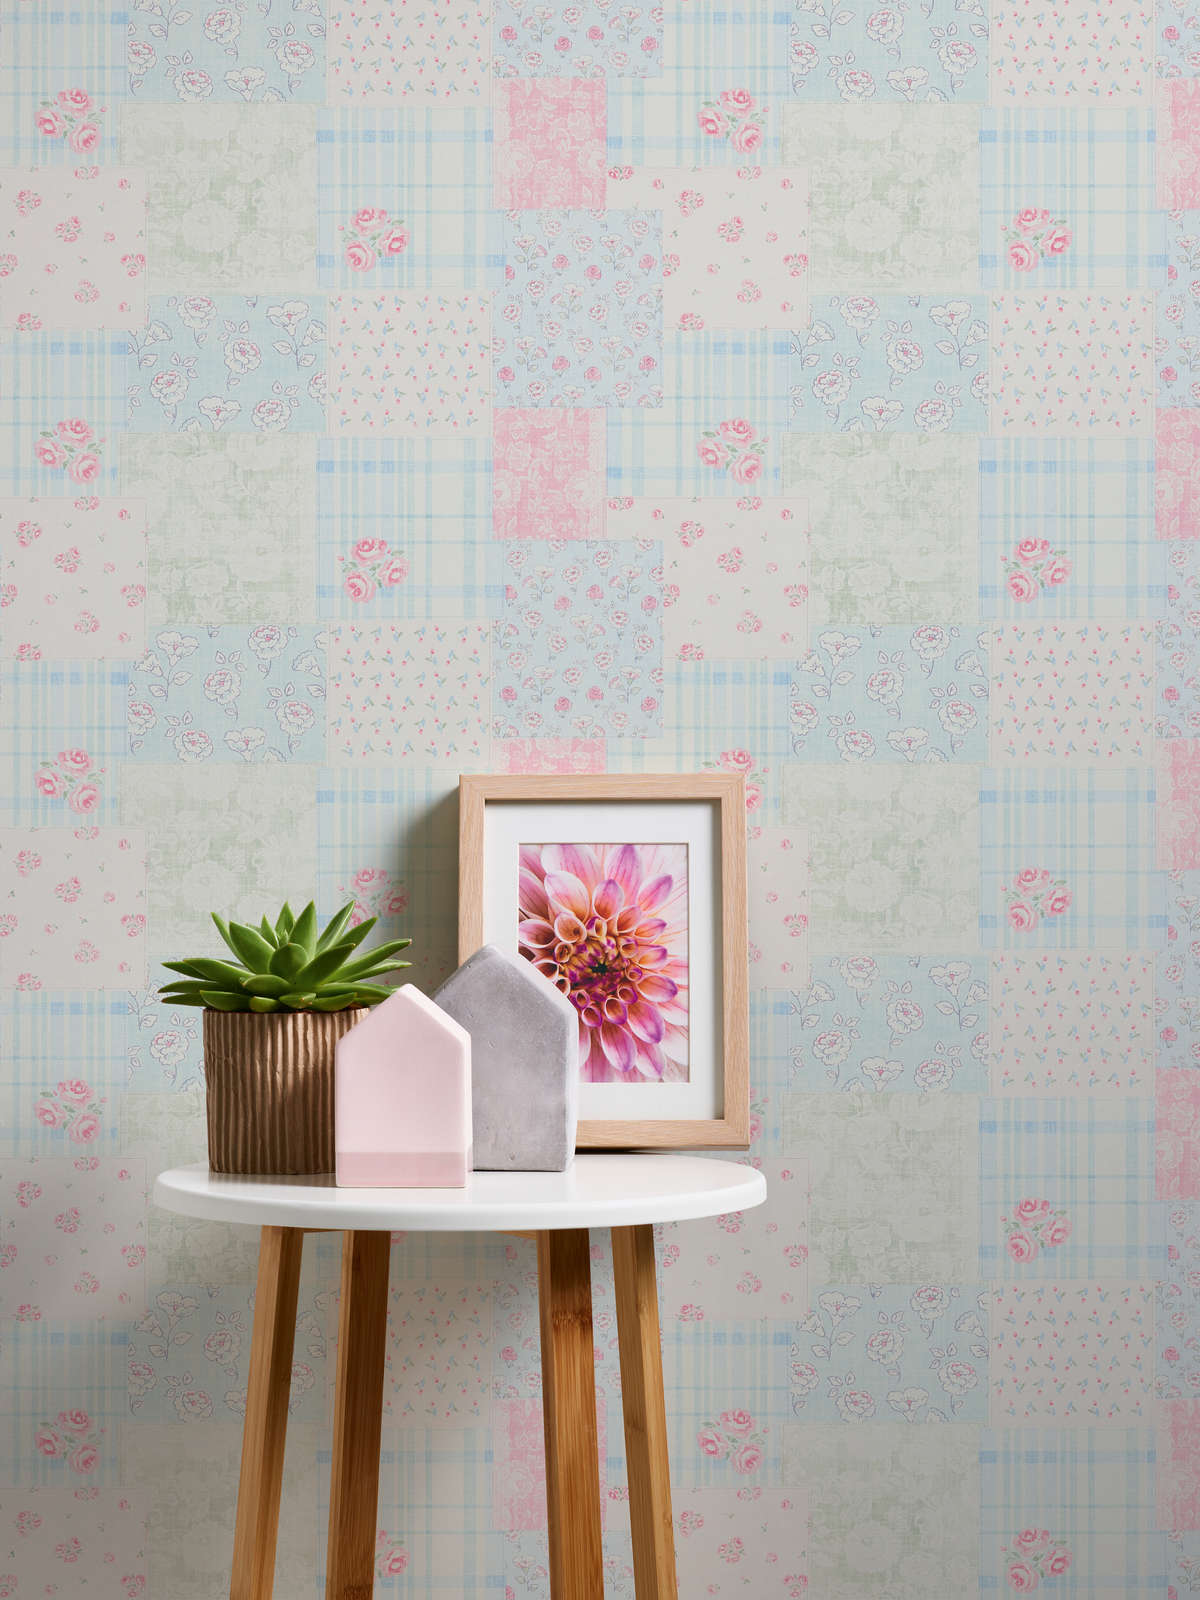             Papier peint intissé style maison de campagne floral - bleu, rose, blanc
        